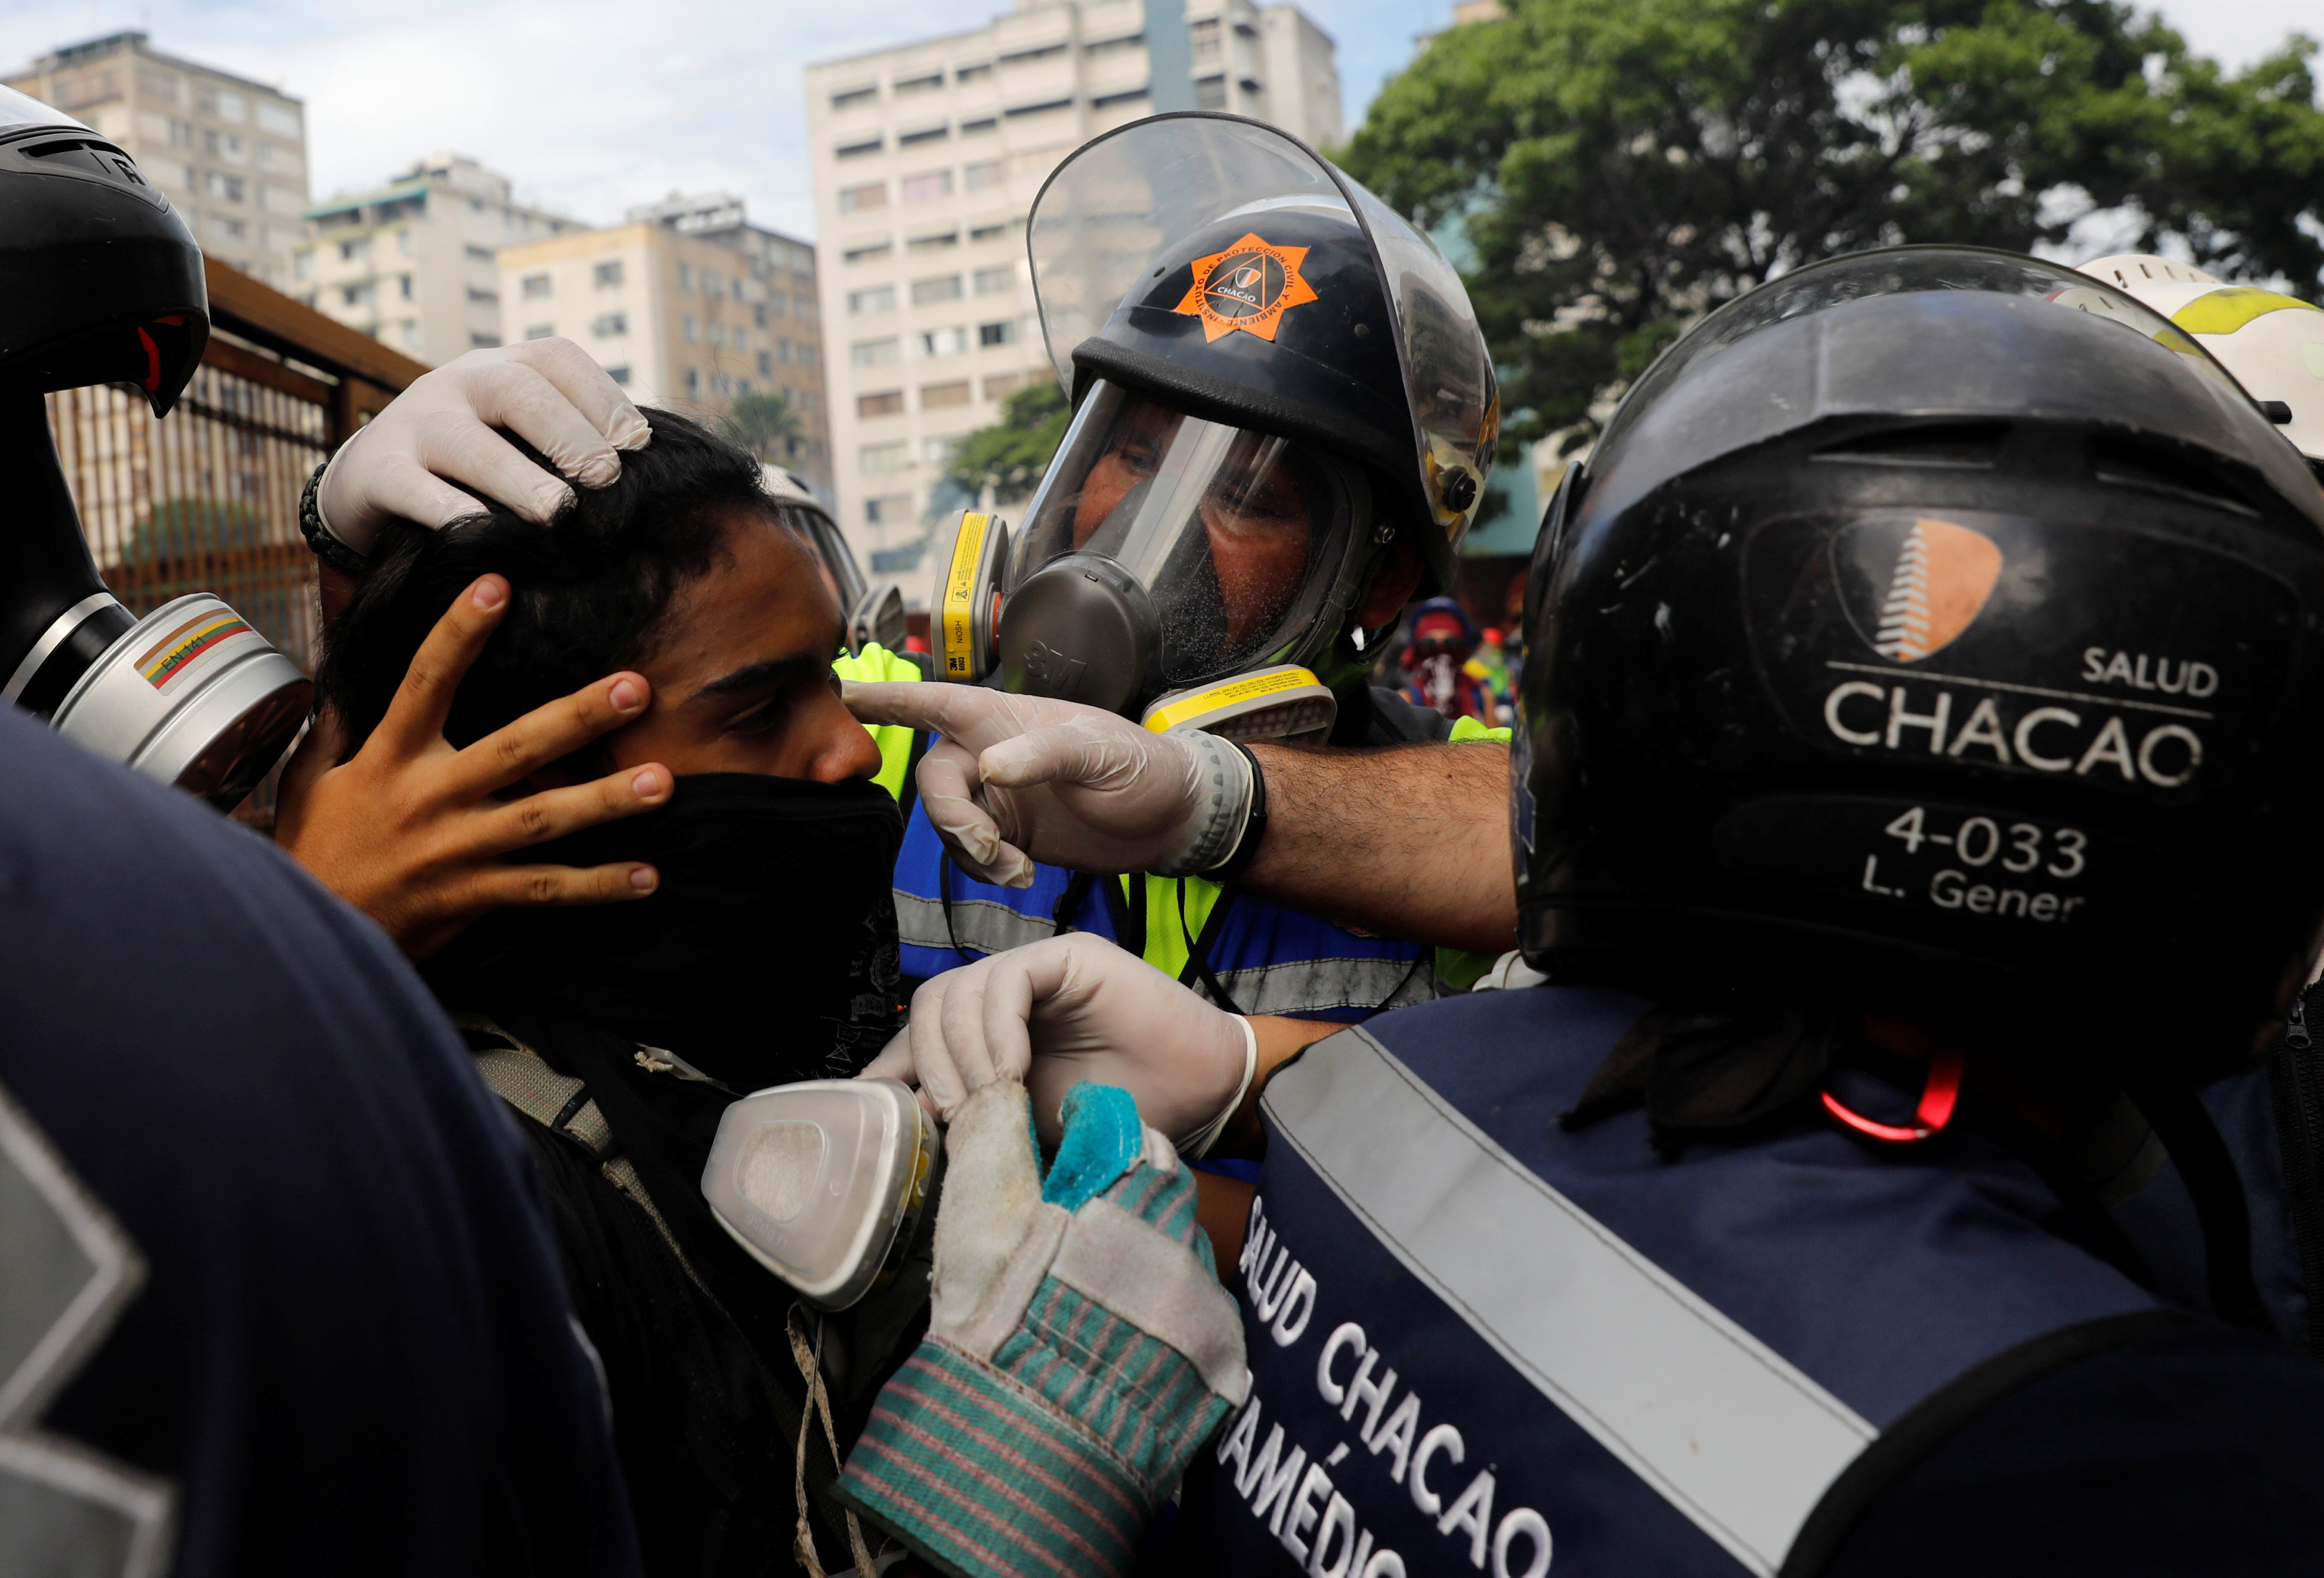 Paramédicos de Salud Chacao prestan atención médica a un herido durante las manifestaciones. REUTERS/Carlos Garcia Rawlins